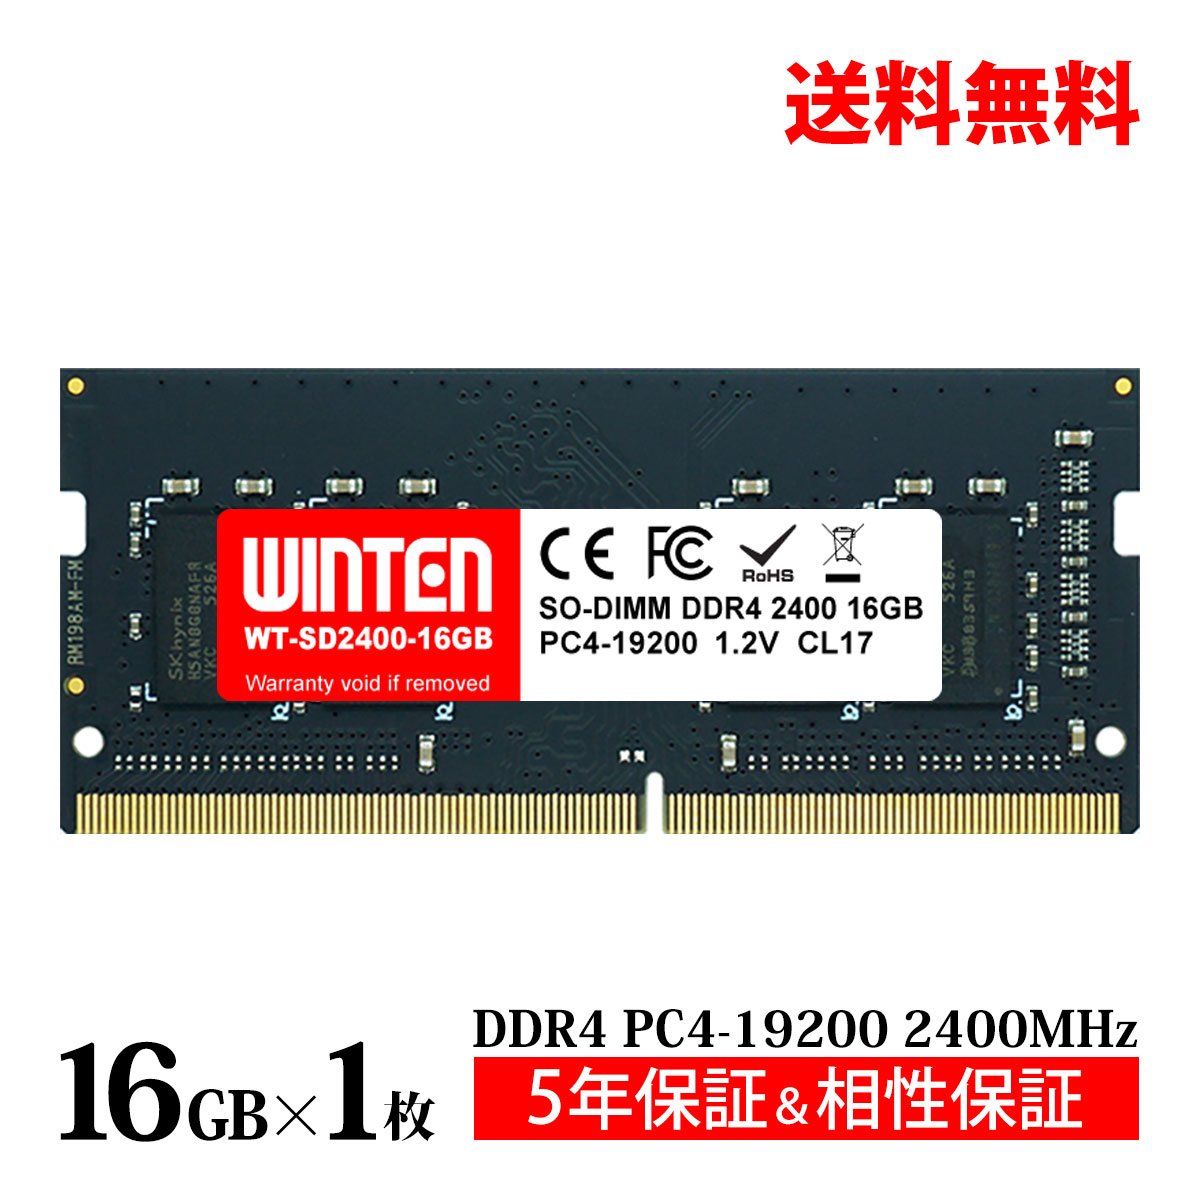 【中古】（非常に良い）Transcend ノートPC用メモリ PC4-25600(DDR4-3200) 8GB 1.2V 260pin SO-DIMM 1Rx16 (1Gx16) CL22 JM3200HSG-8G